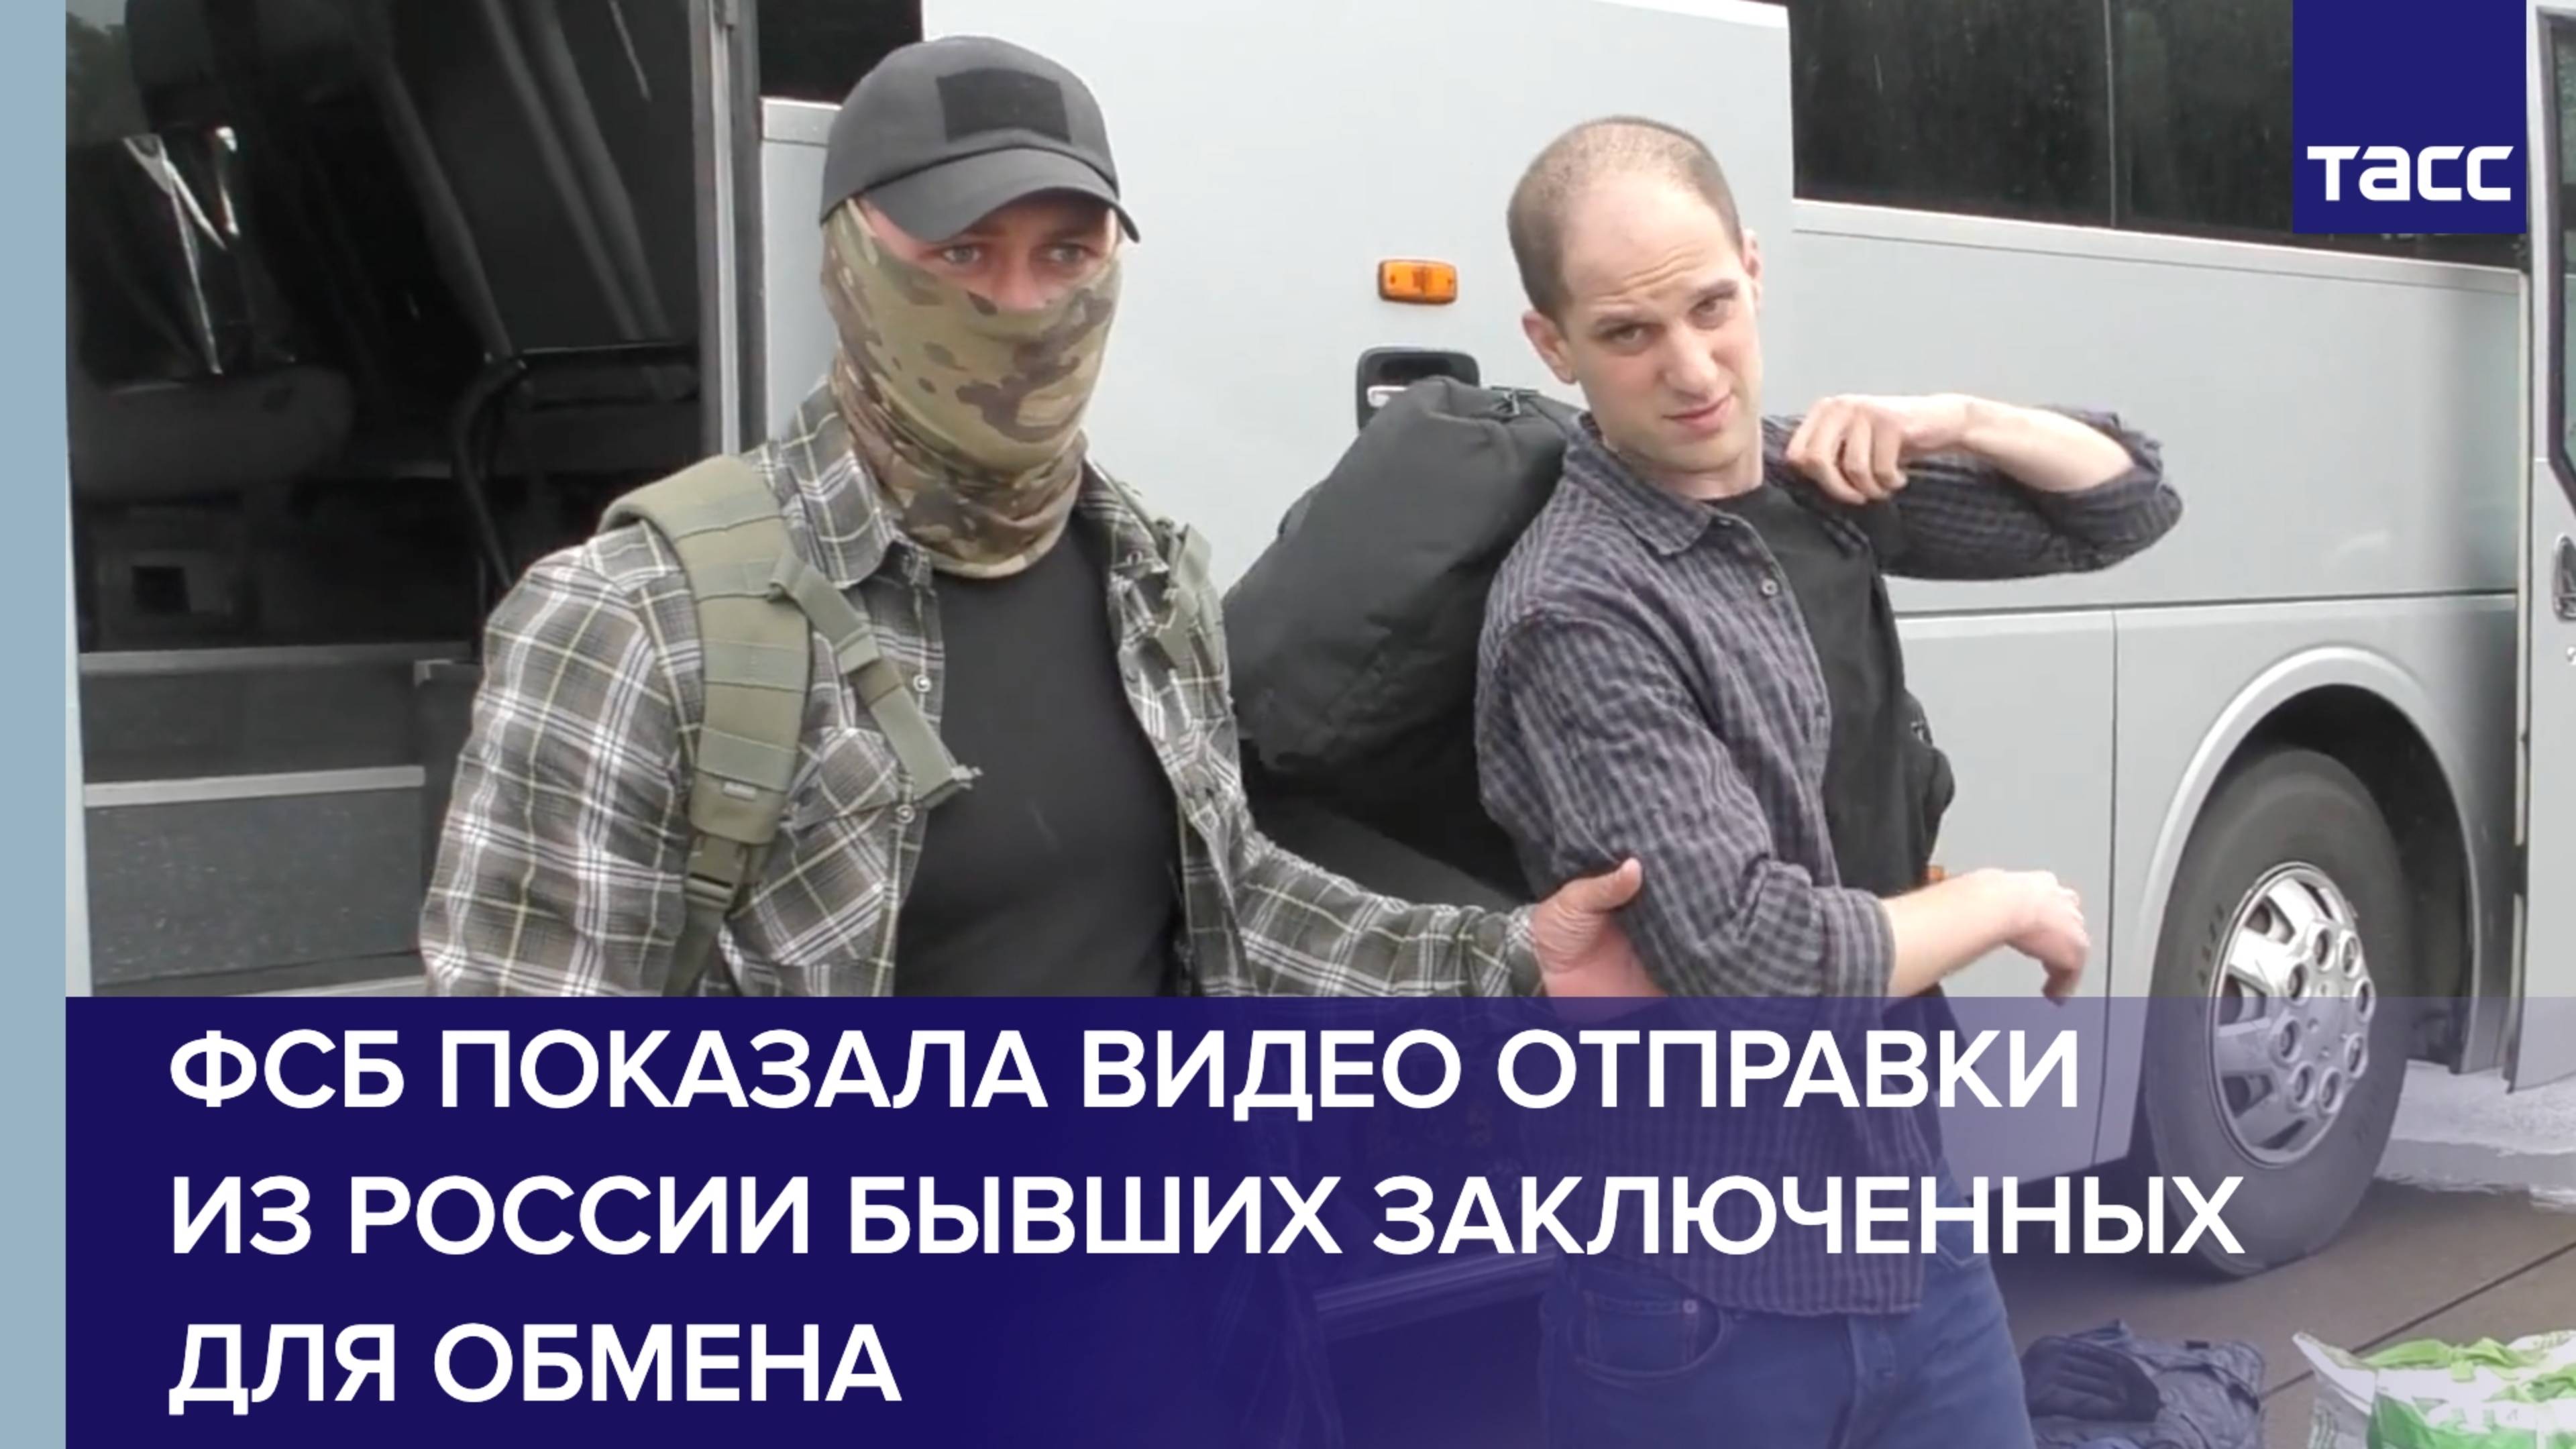 ФСБ показала видео отправки из России бывших заключенных для обмена